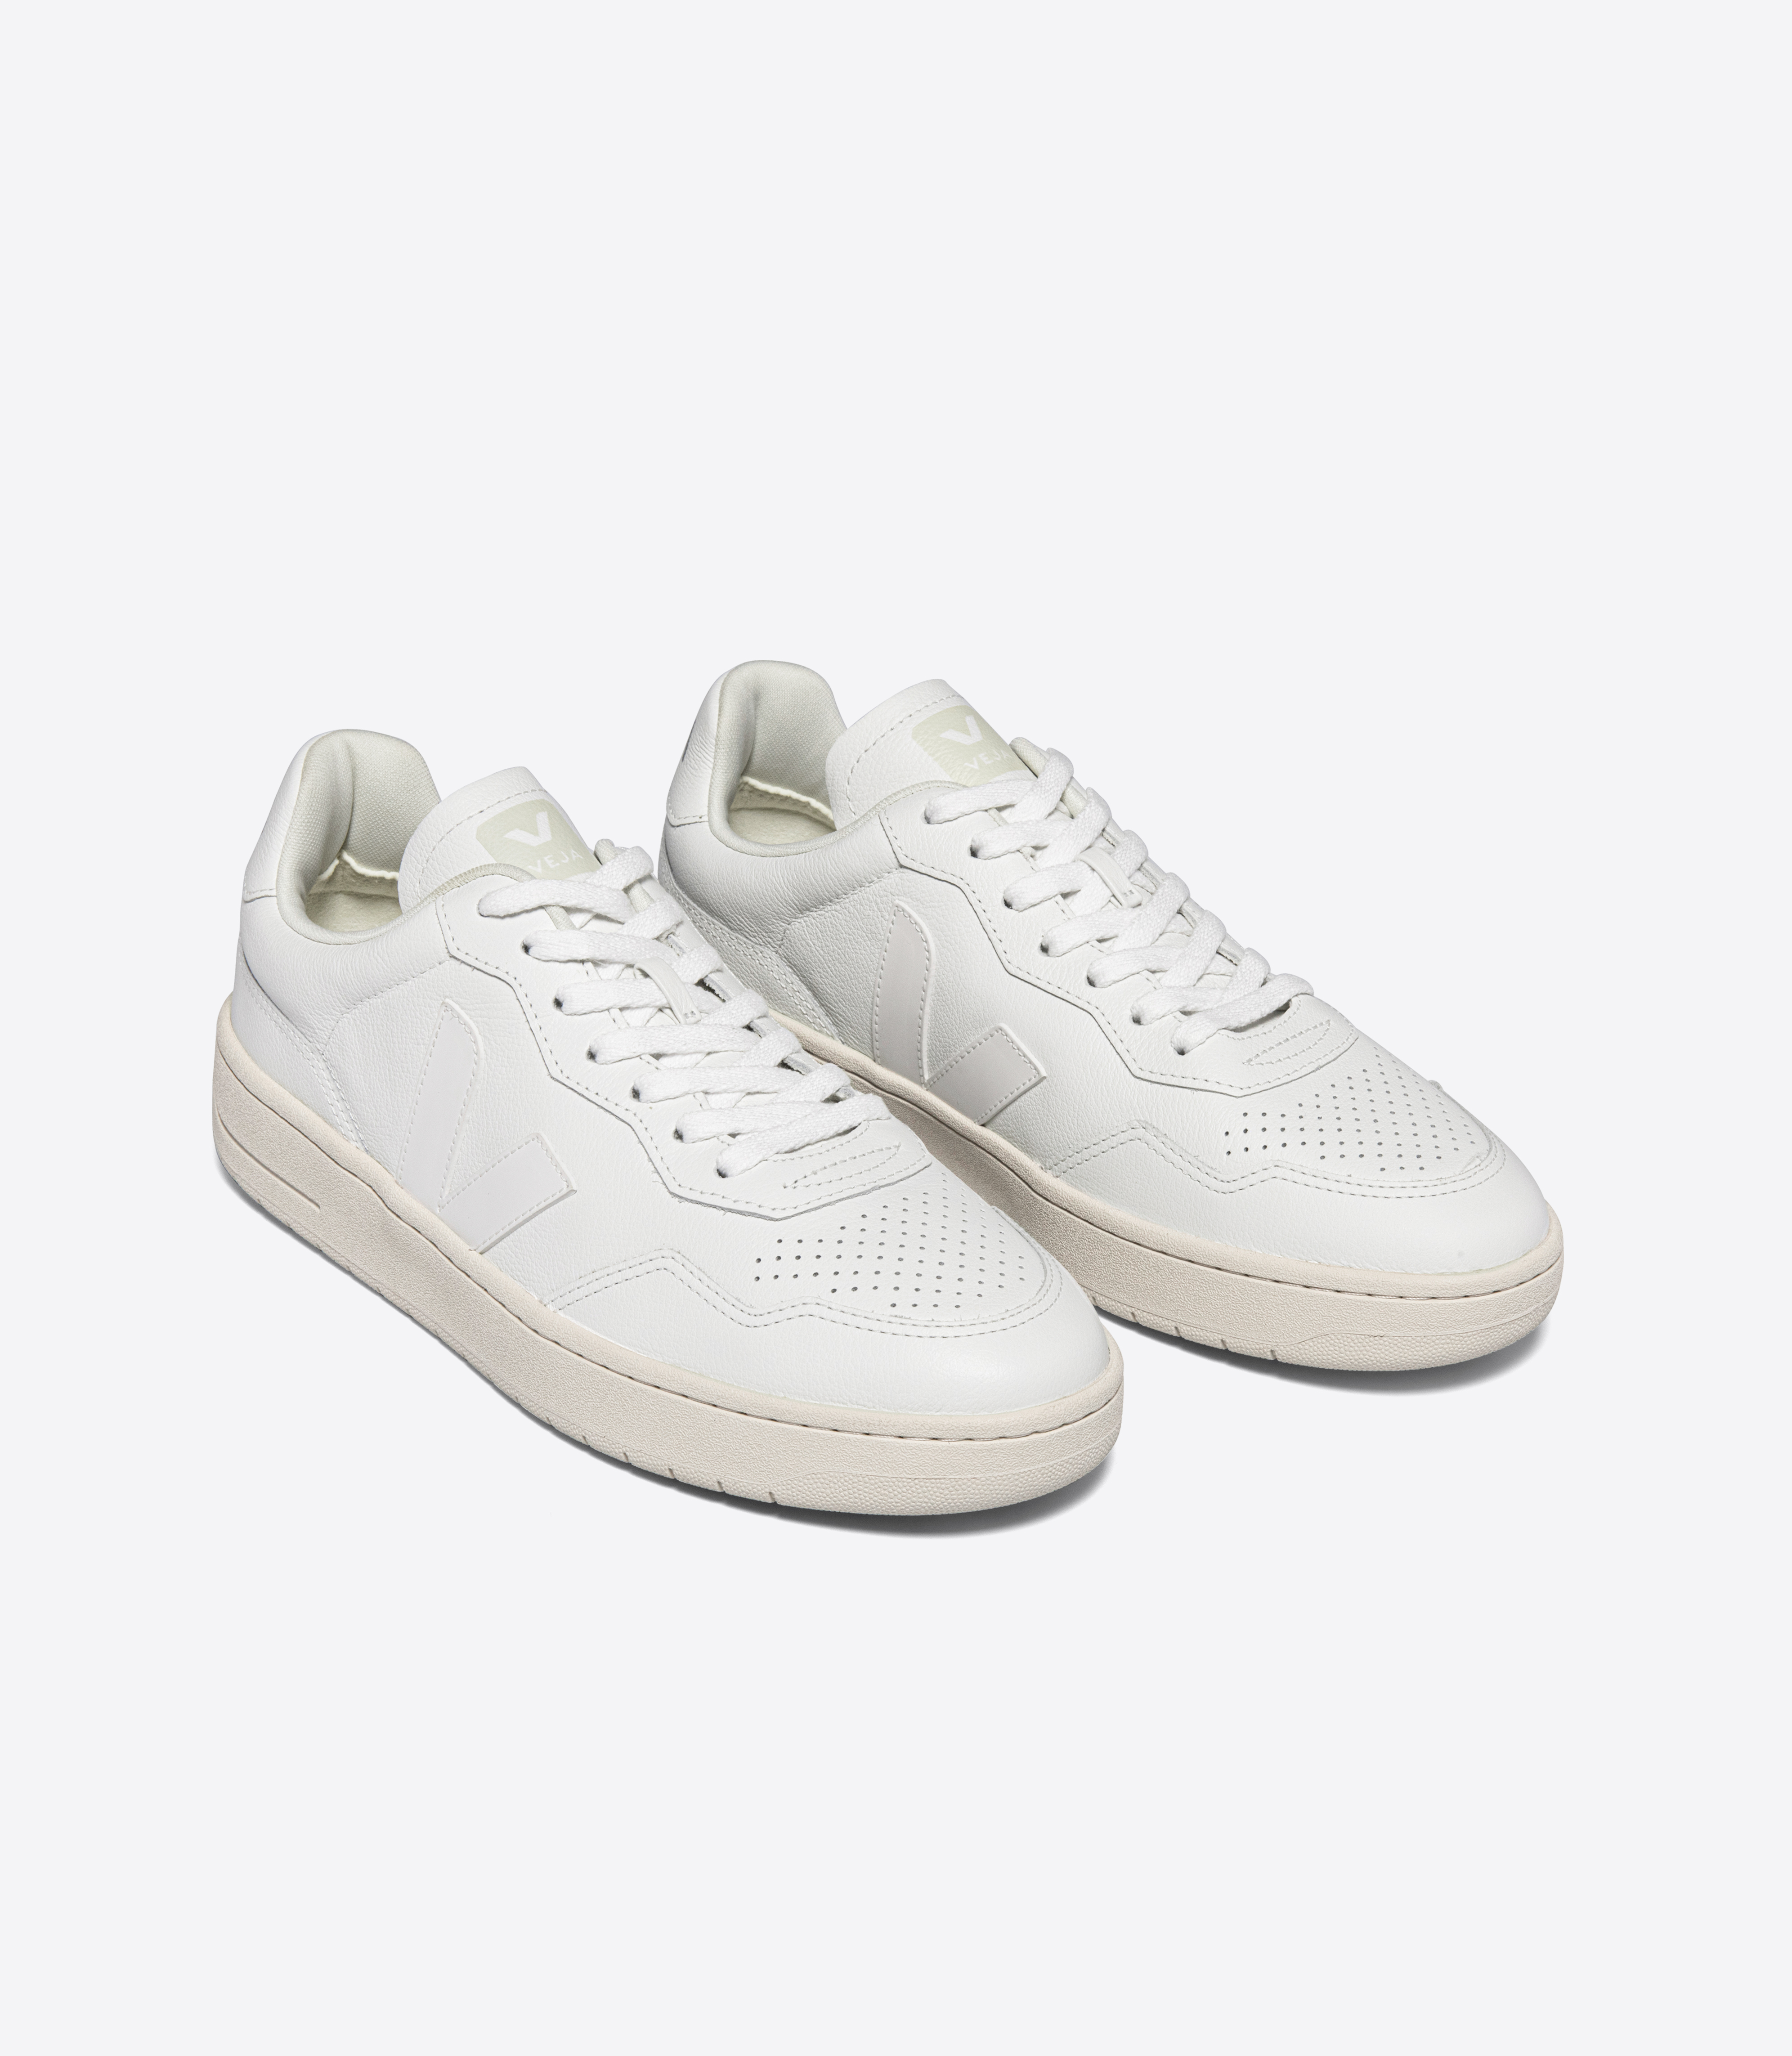 Herren-Sneakers V-90 OT Leather Extra White